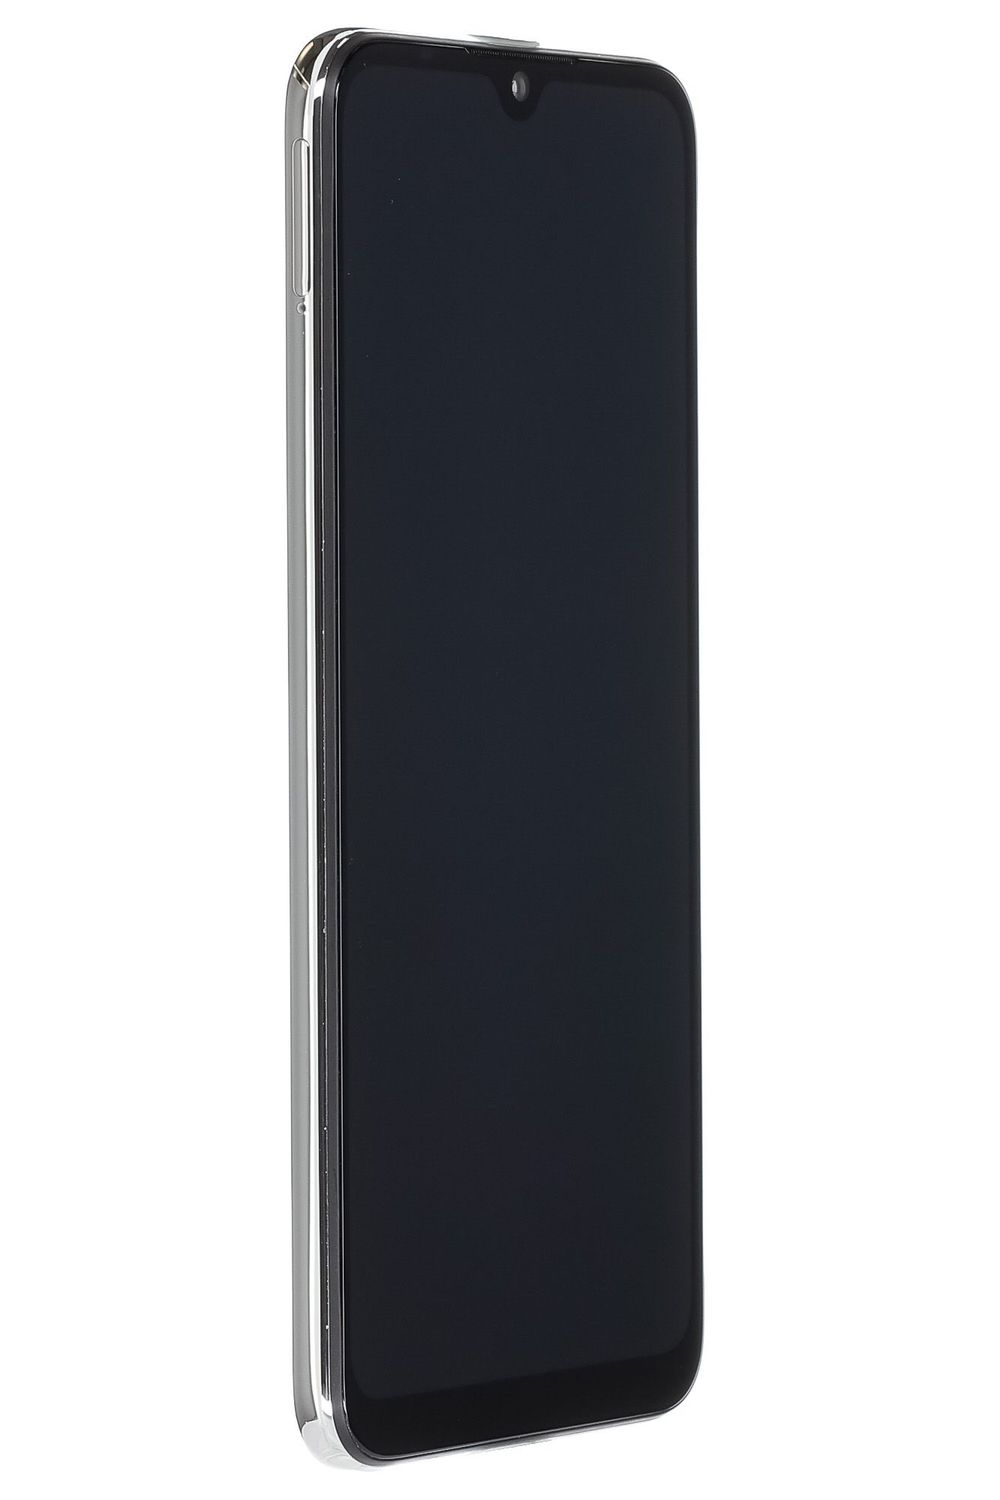 Mobiltelefon Xiaomi Mi A3, More Than White, 128 GB, Foarte Bun